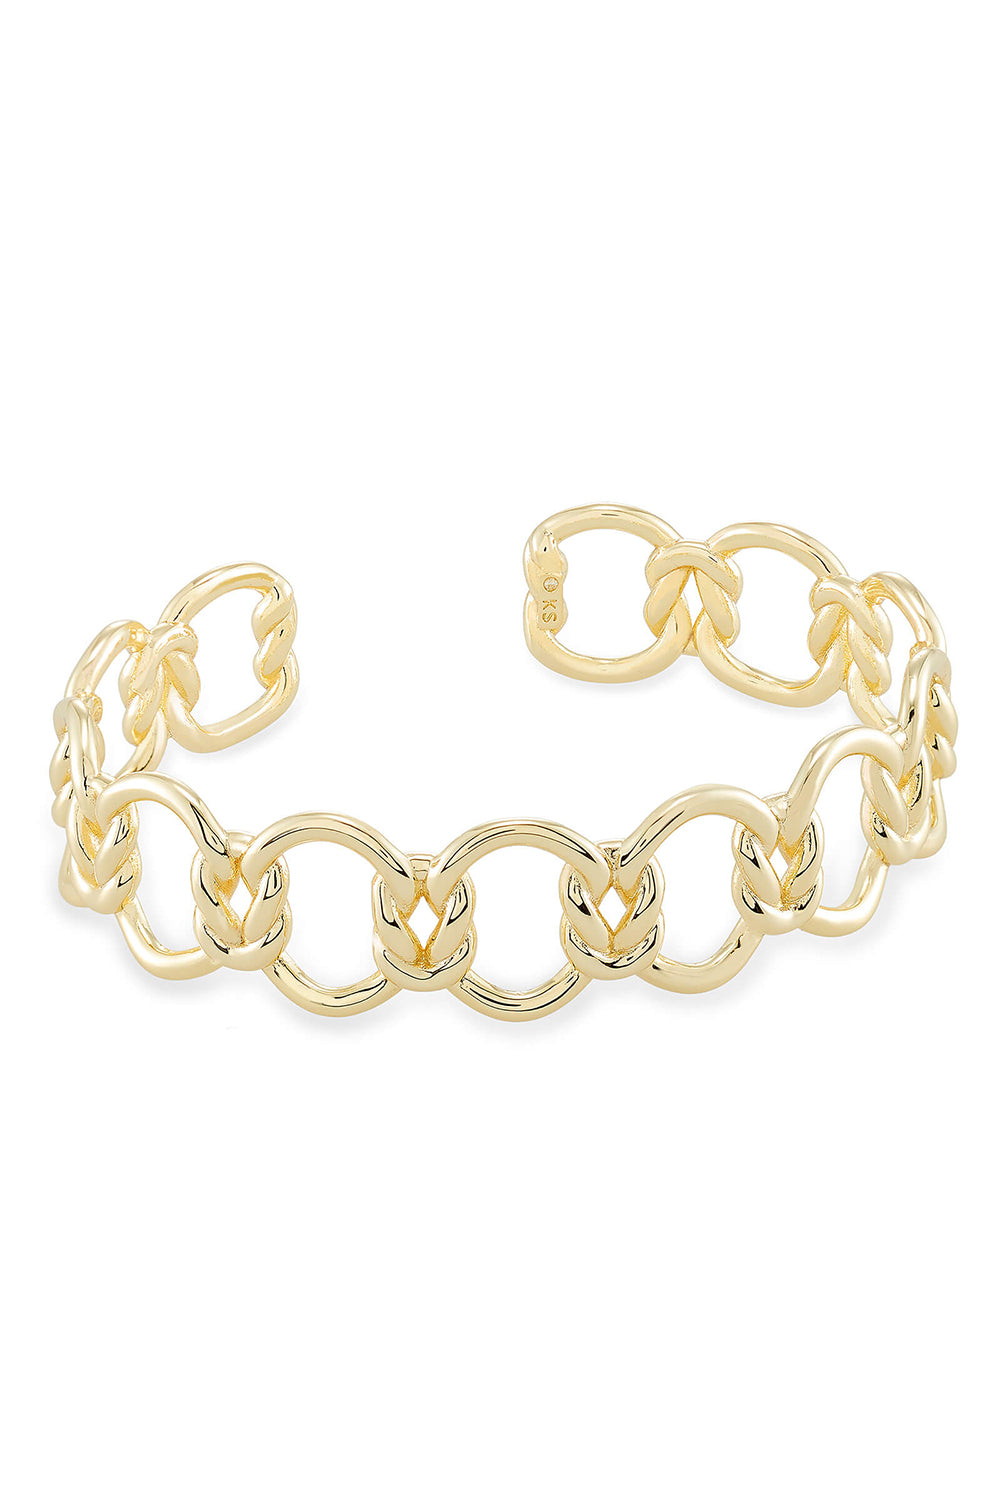 Kendra Scott: Fallyn Cuff Bracelet - Gold | Makk Fashions